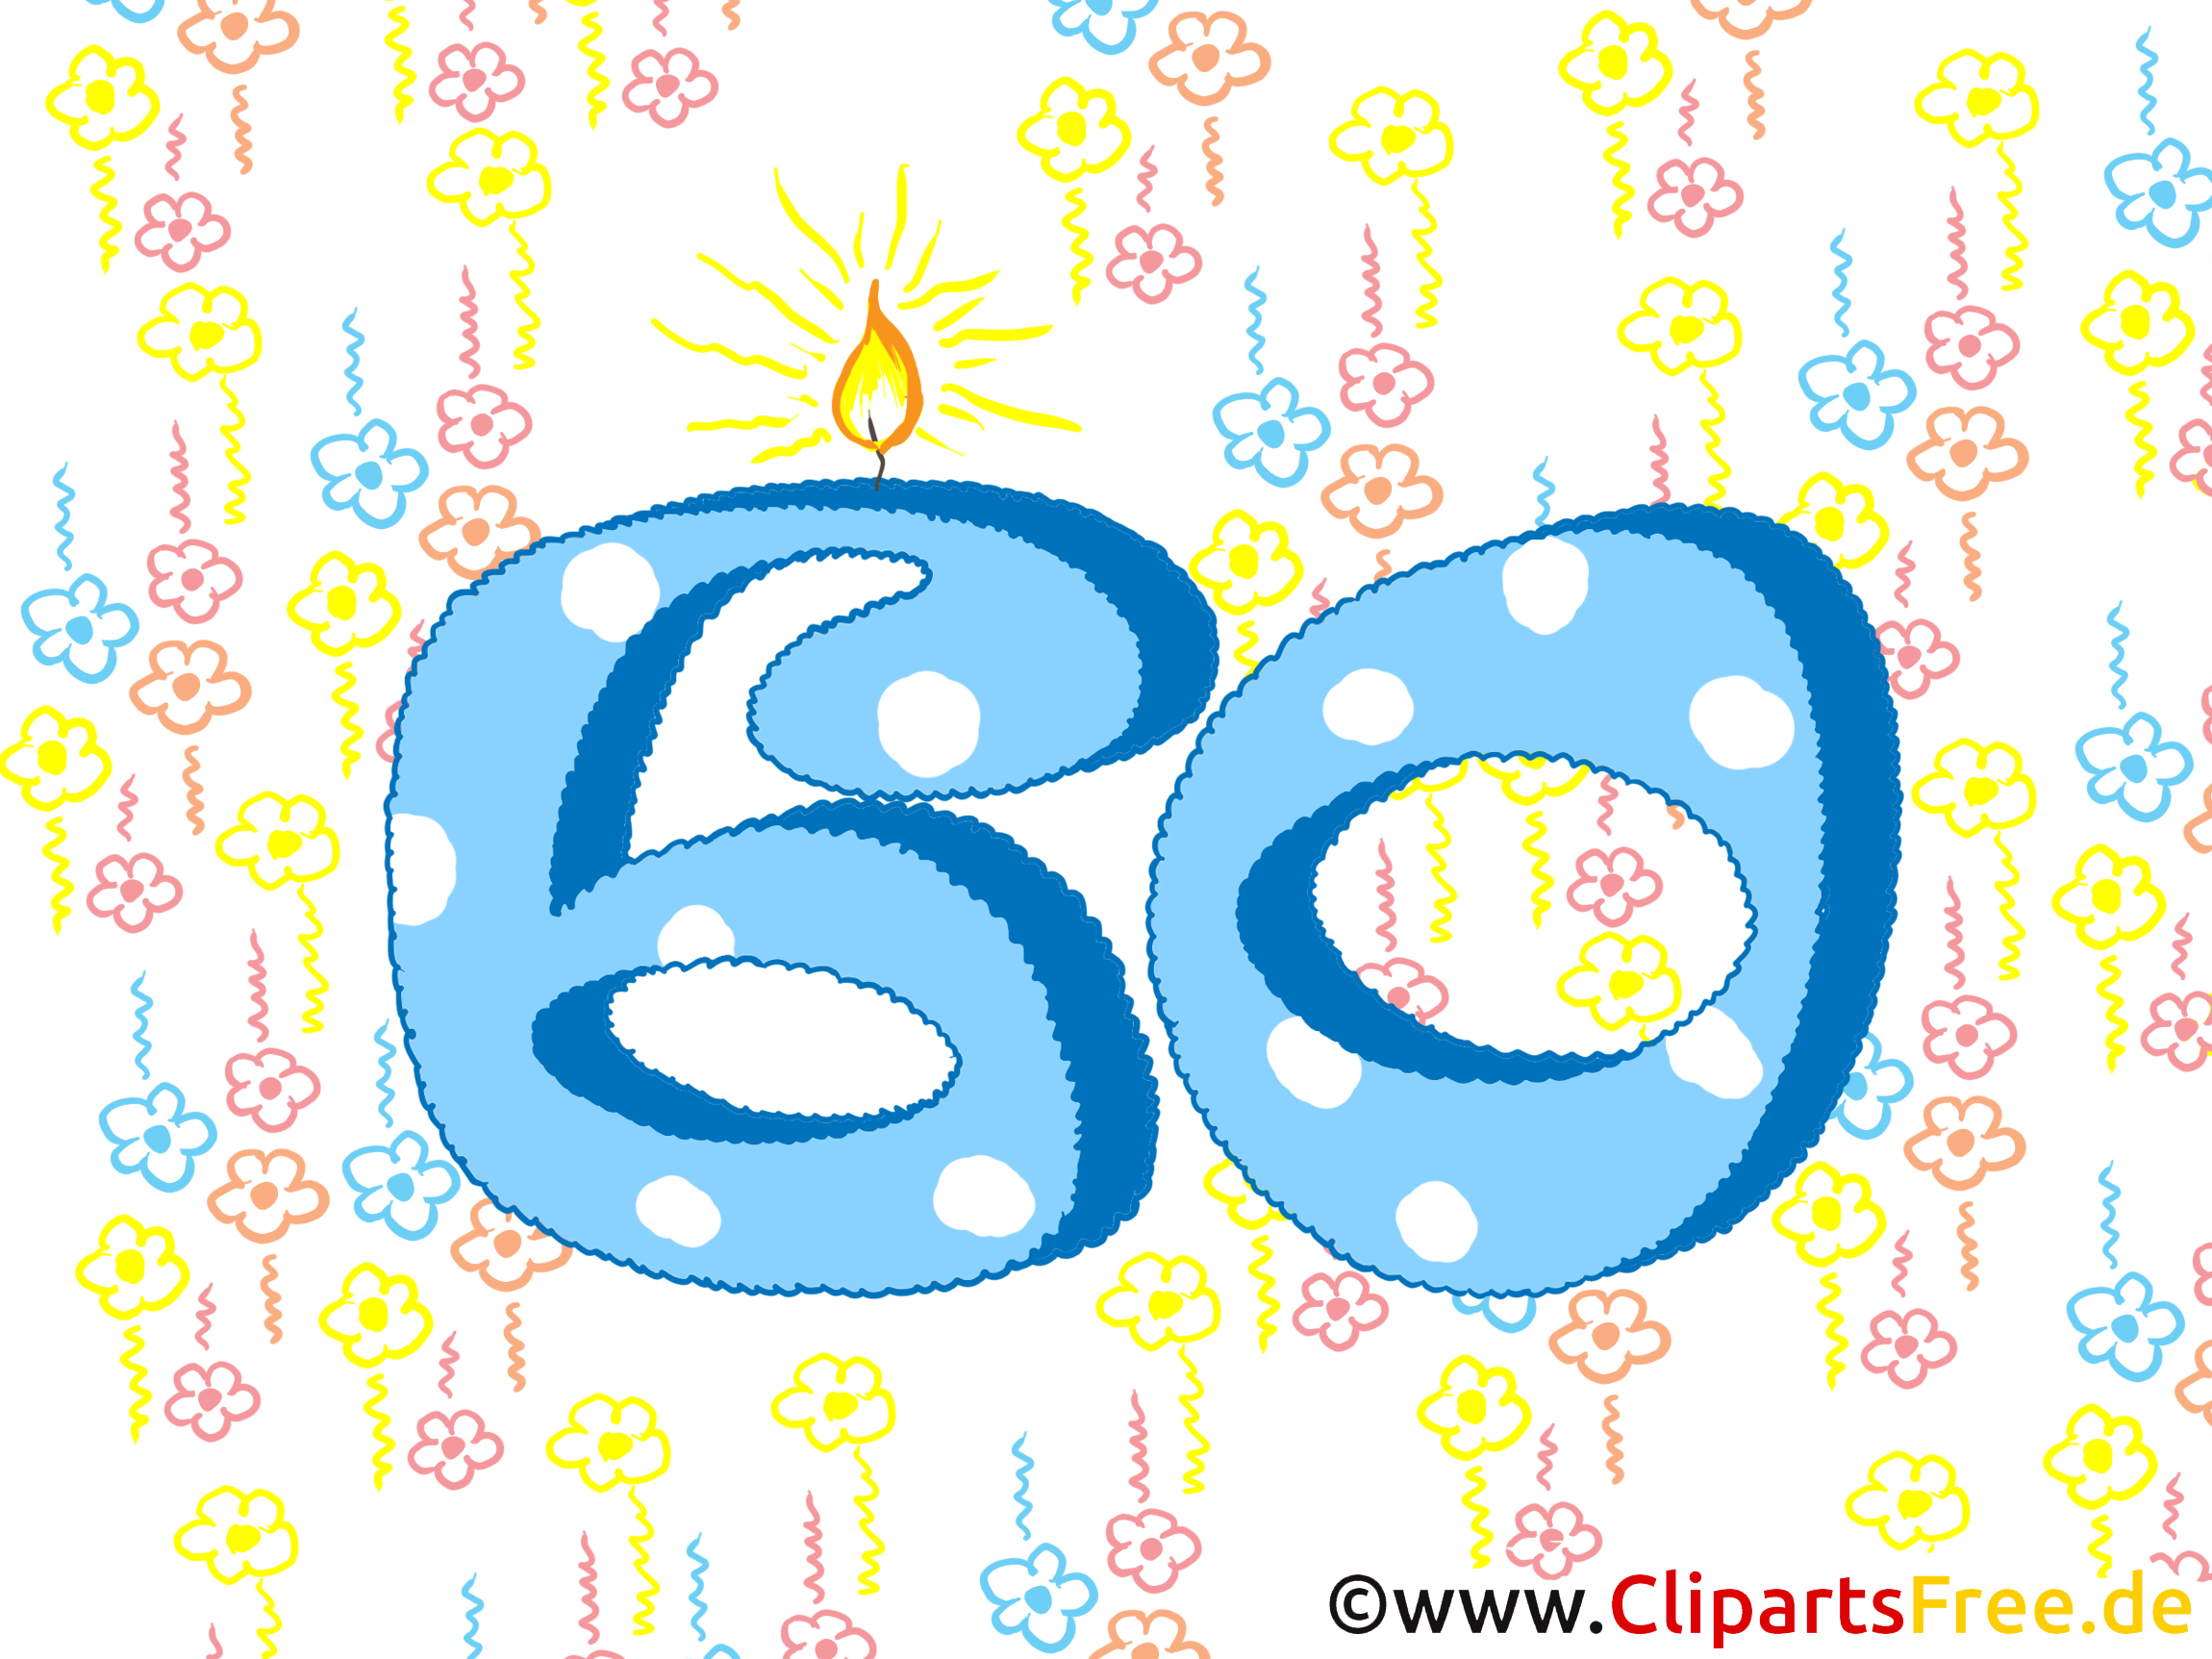 Geburtstagswünsche Zum 60 - Glückwunschkarte Gratis über Whatsapp Bilder Zum 60 Geburtstag